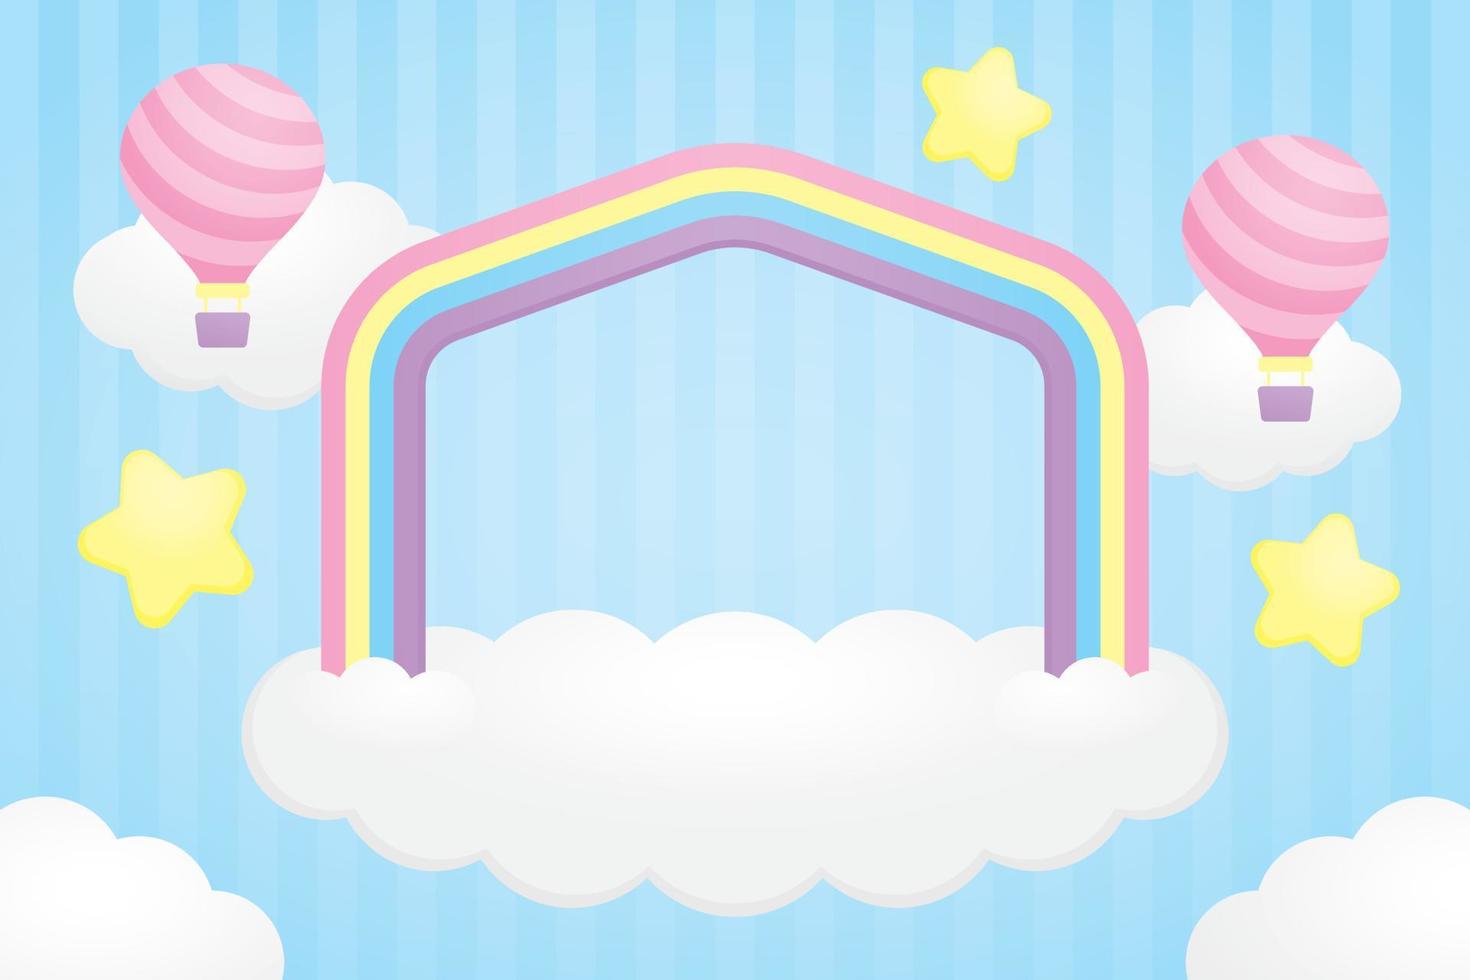 süß Haus gestalten Regenbogen Bogen und Weiß Wolke Base mit kawaii Luft Ballon und Sterne Grafik Element auf Pastell- Blau Hintergrund Illustration Vektor